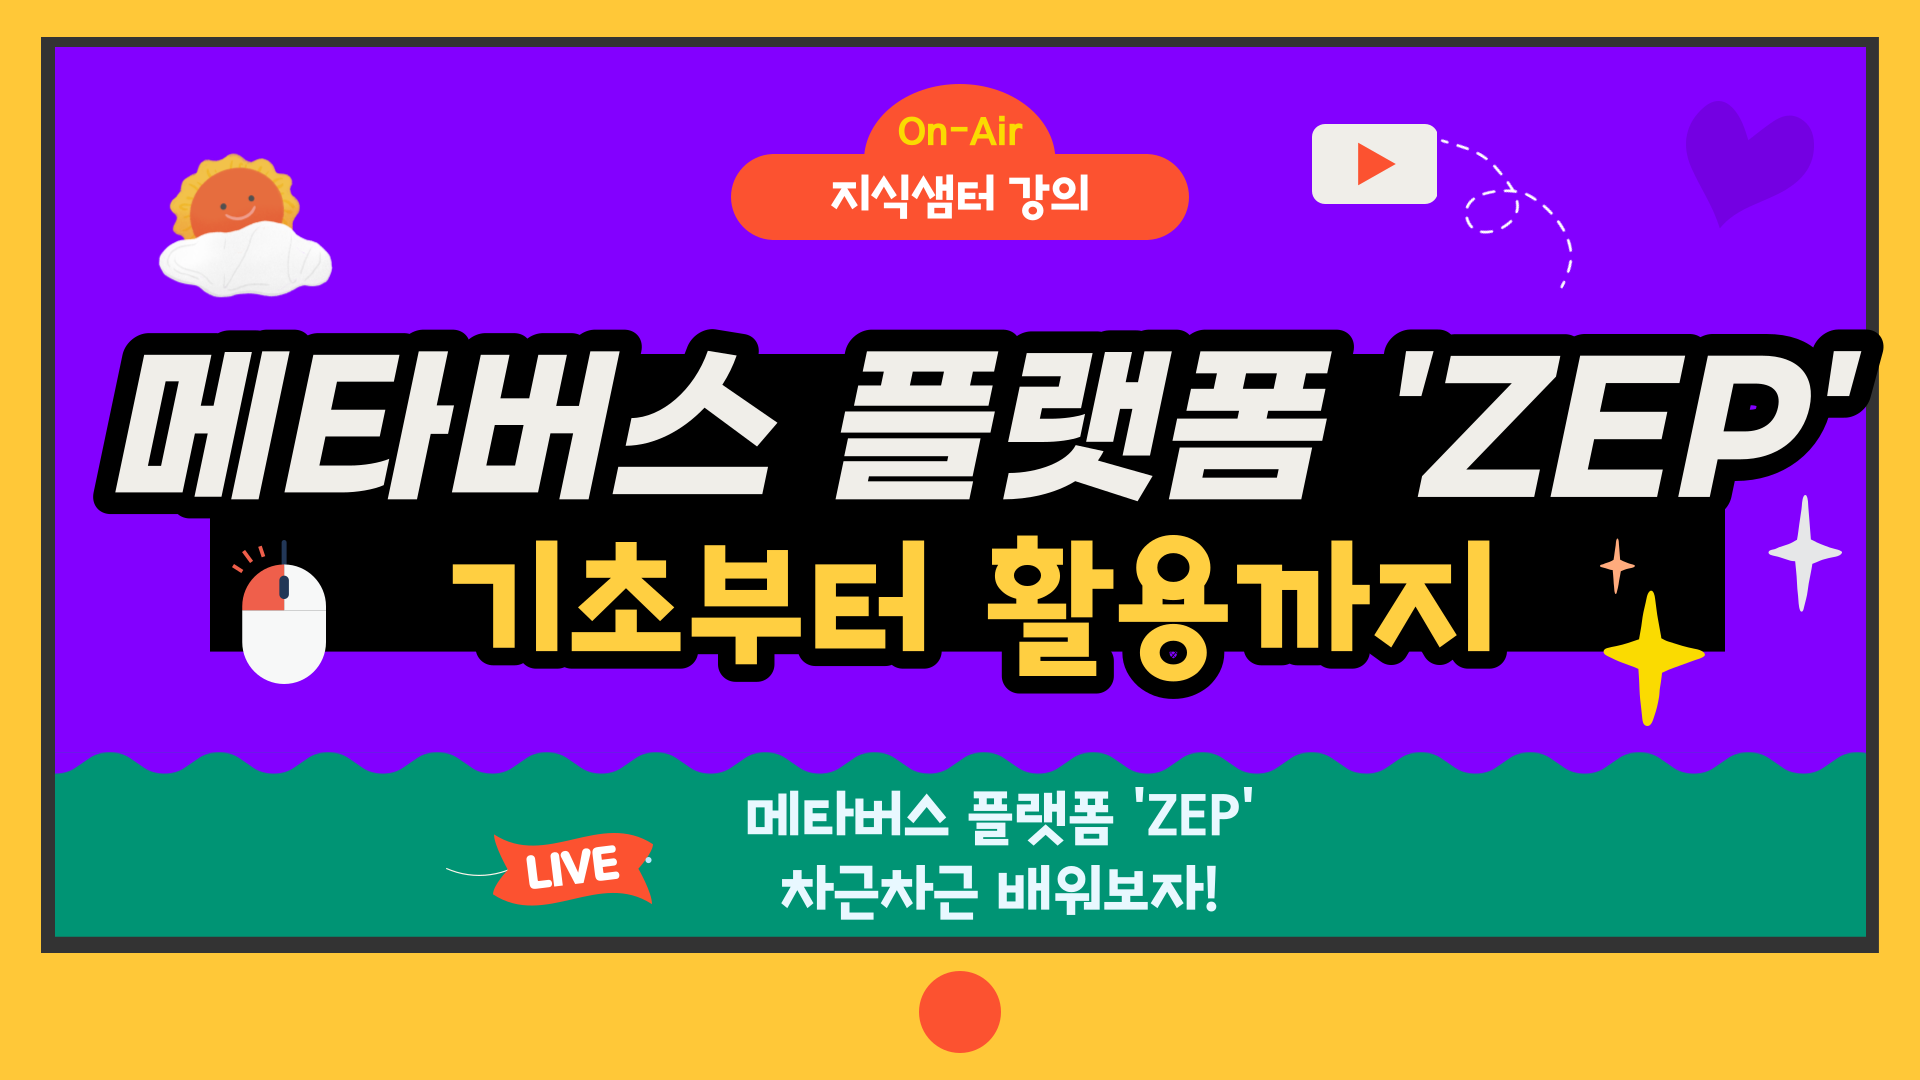 메타버스 플랫폼 'ZEP' 기초부터 활용까지 4기